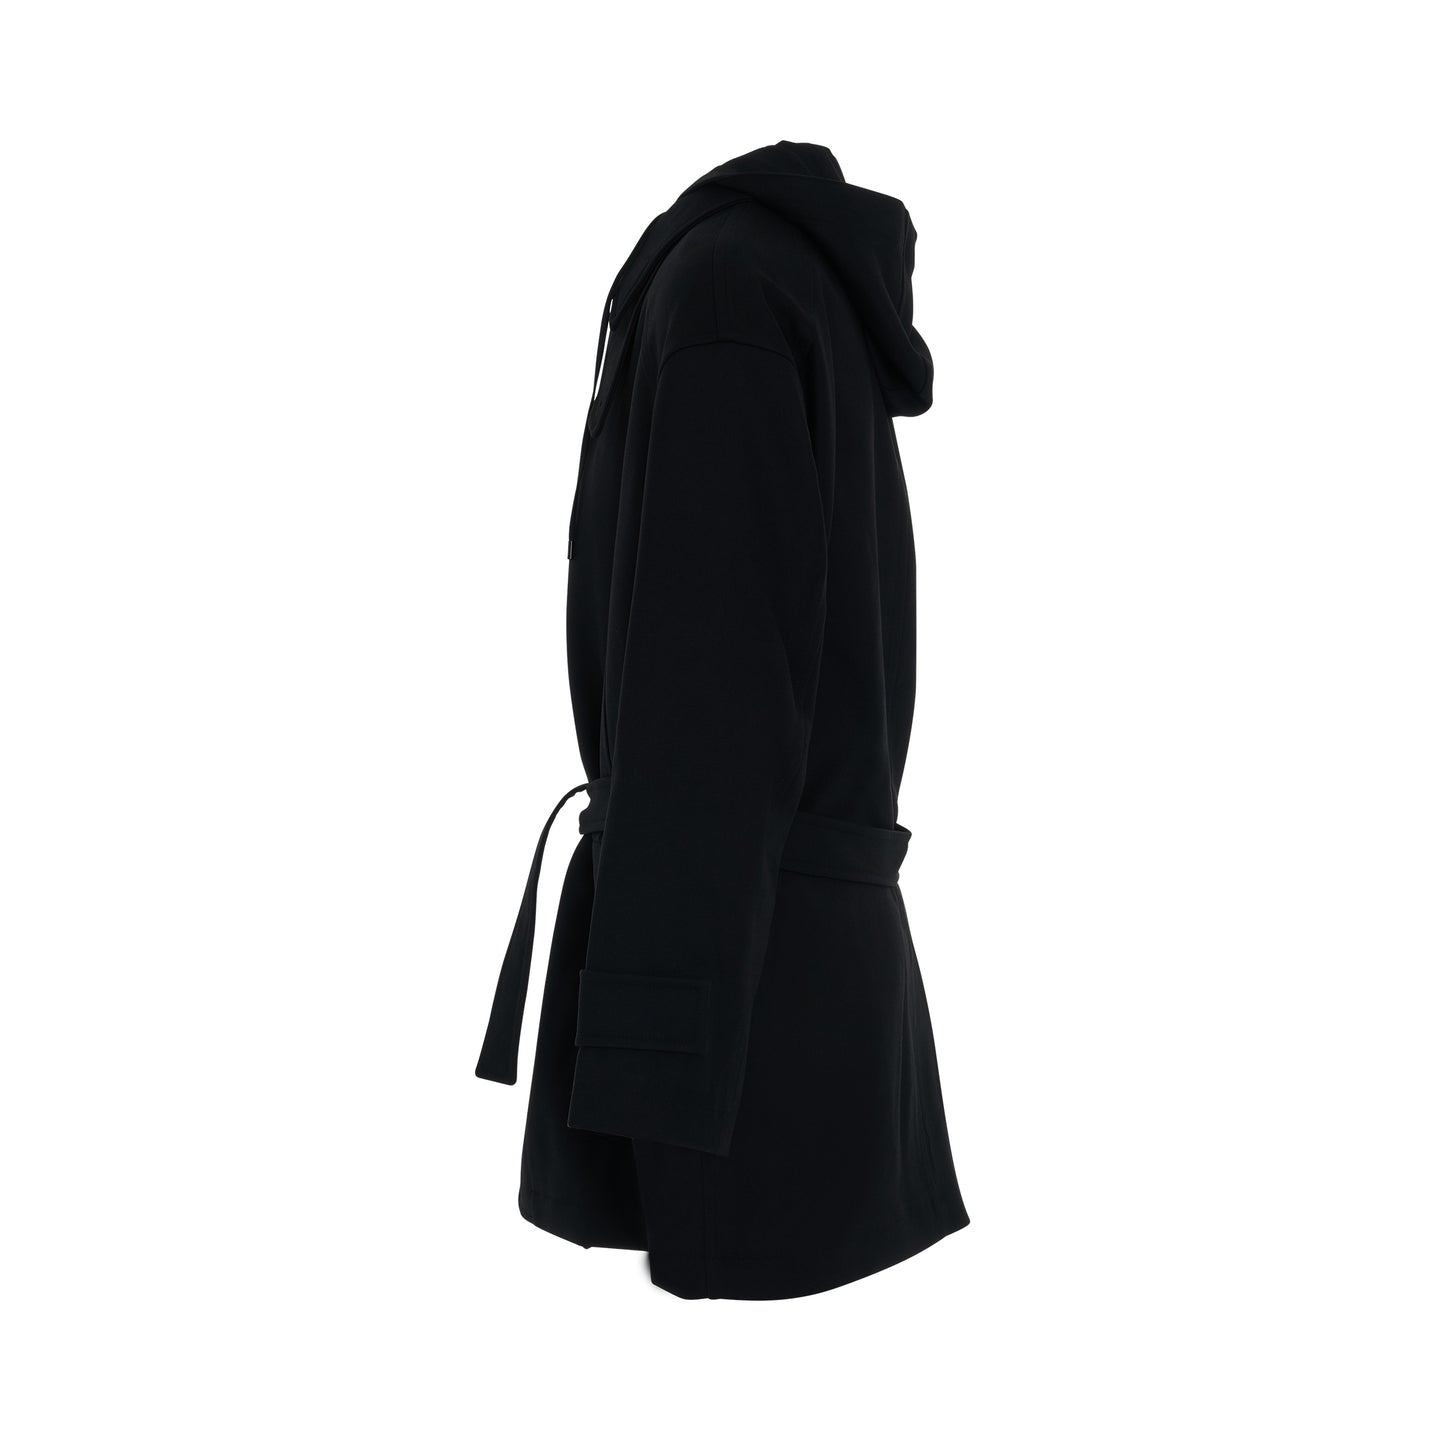 Juunj Hooded Coat in Black